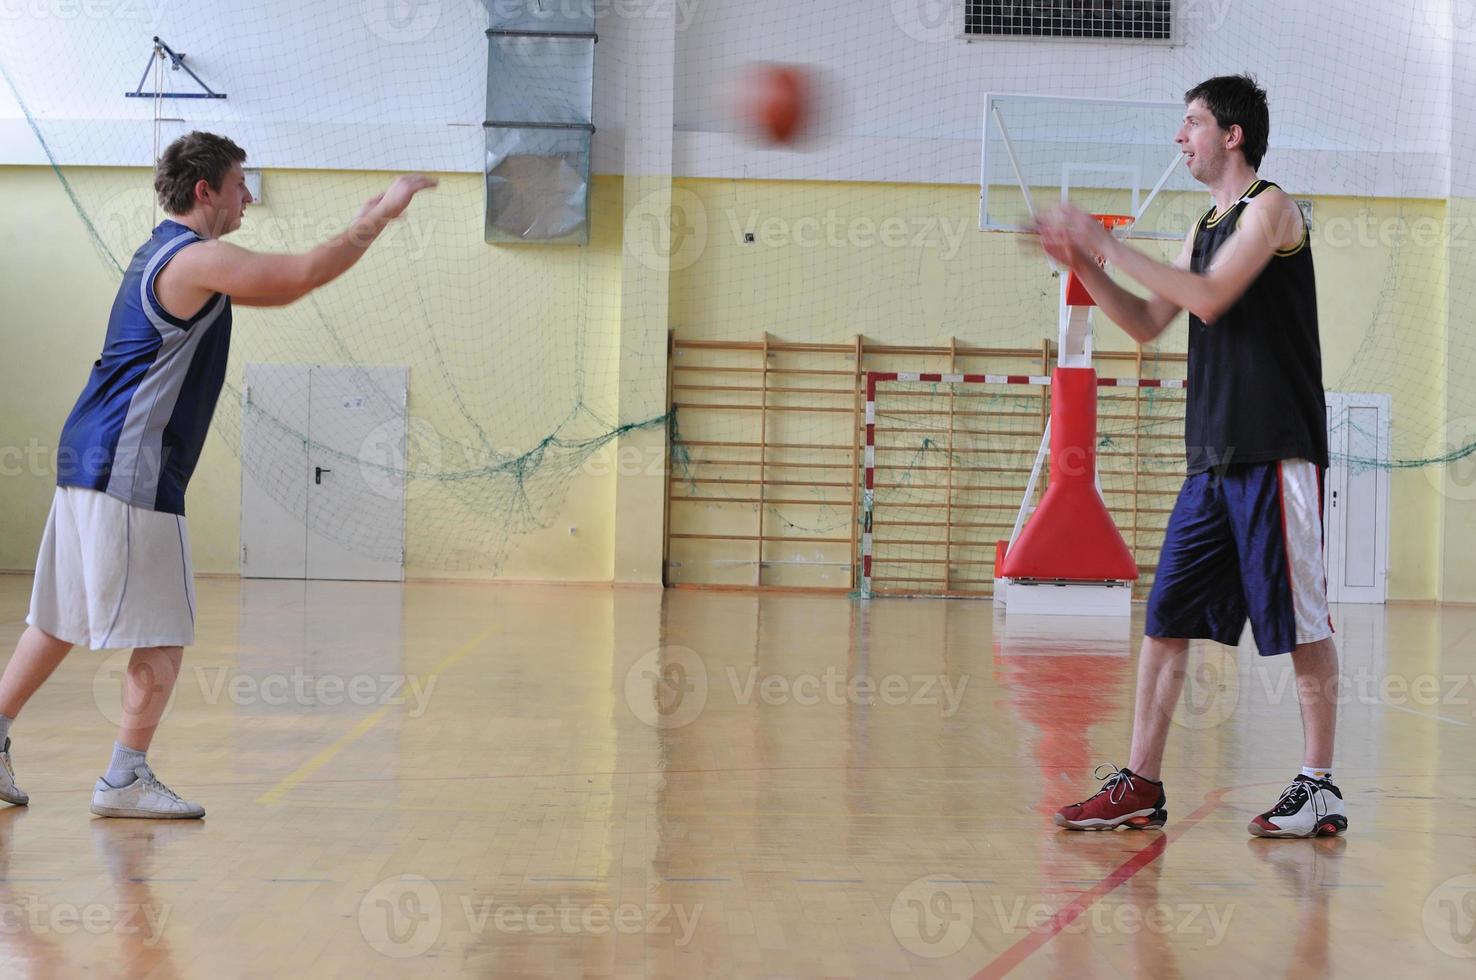 Basketball-Wettbewerbskonzept foto